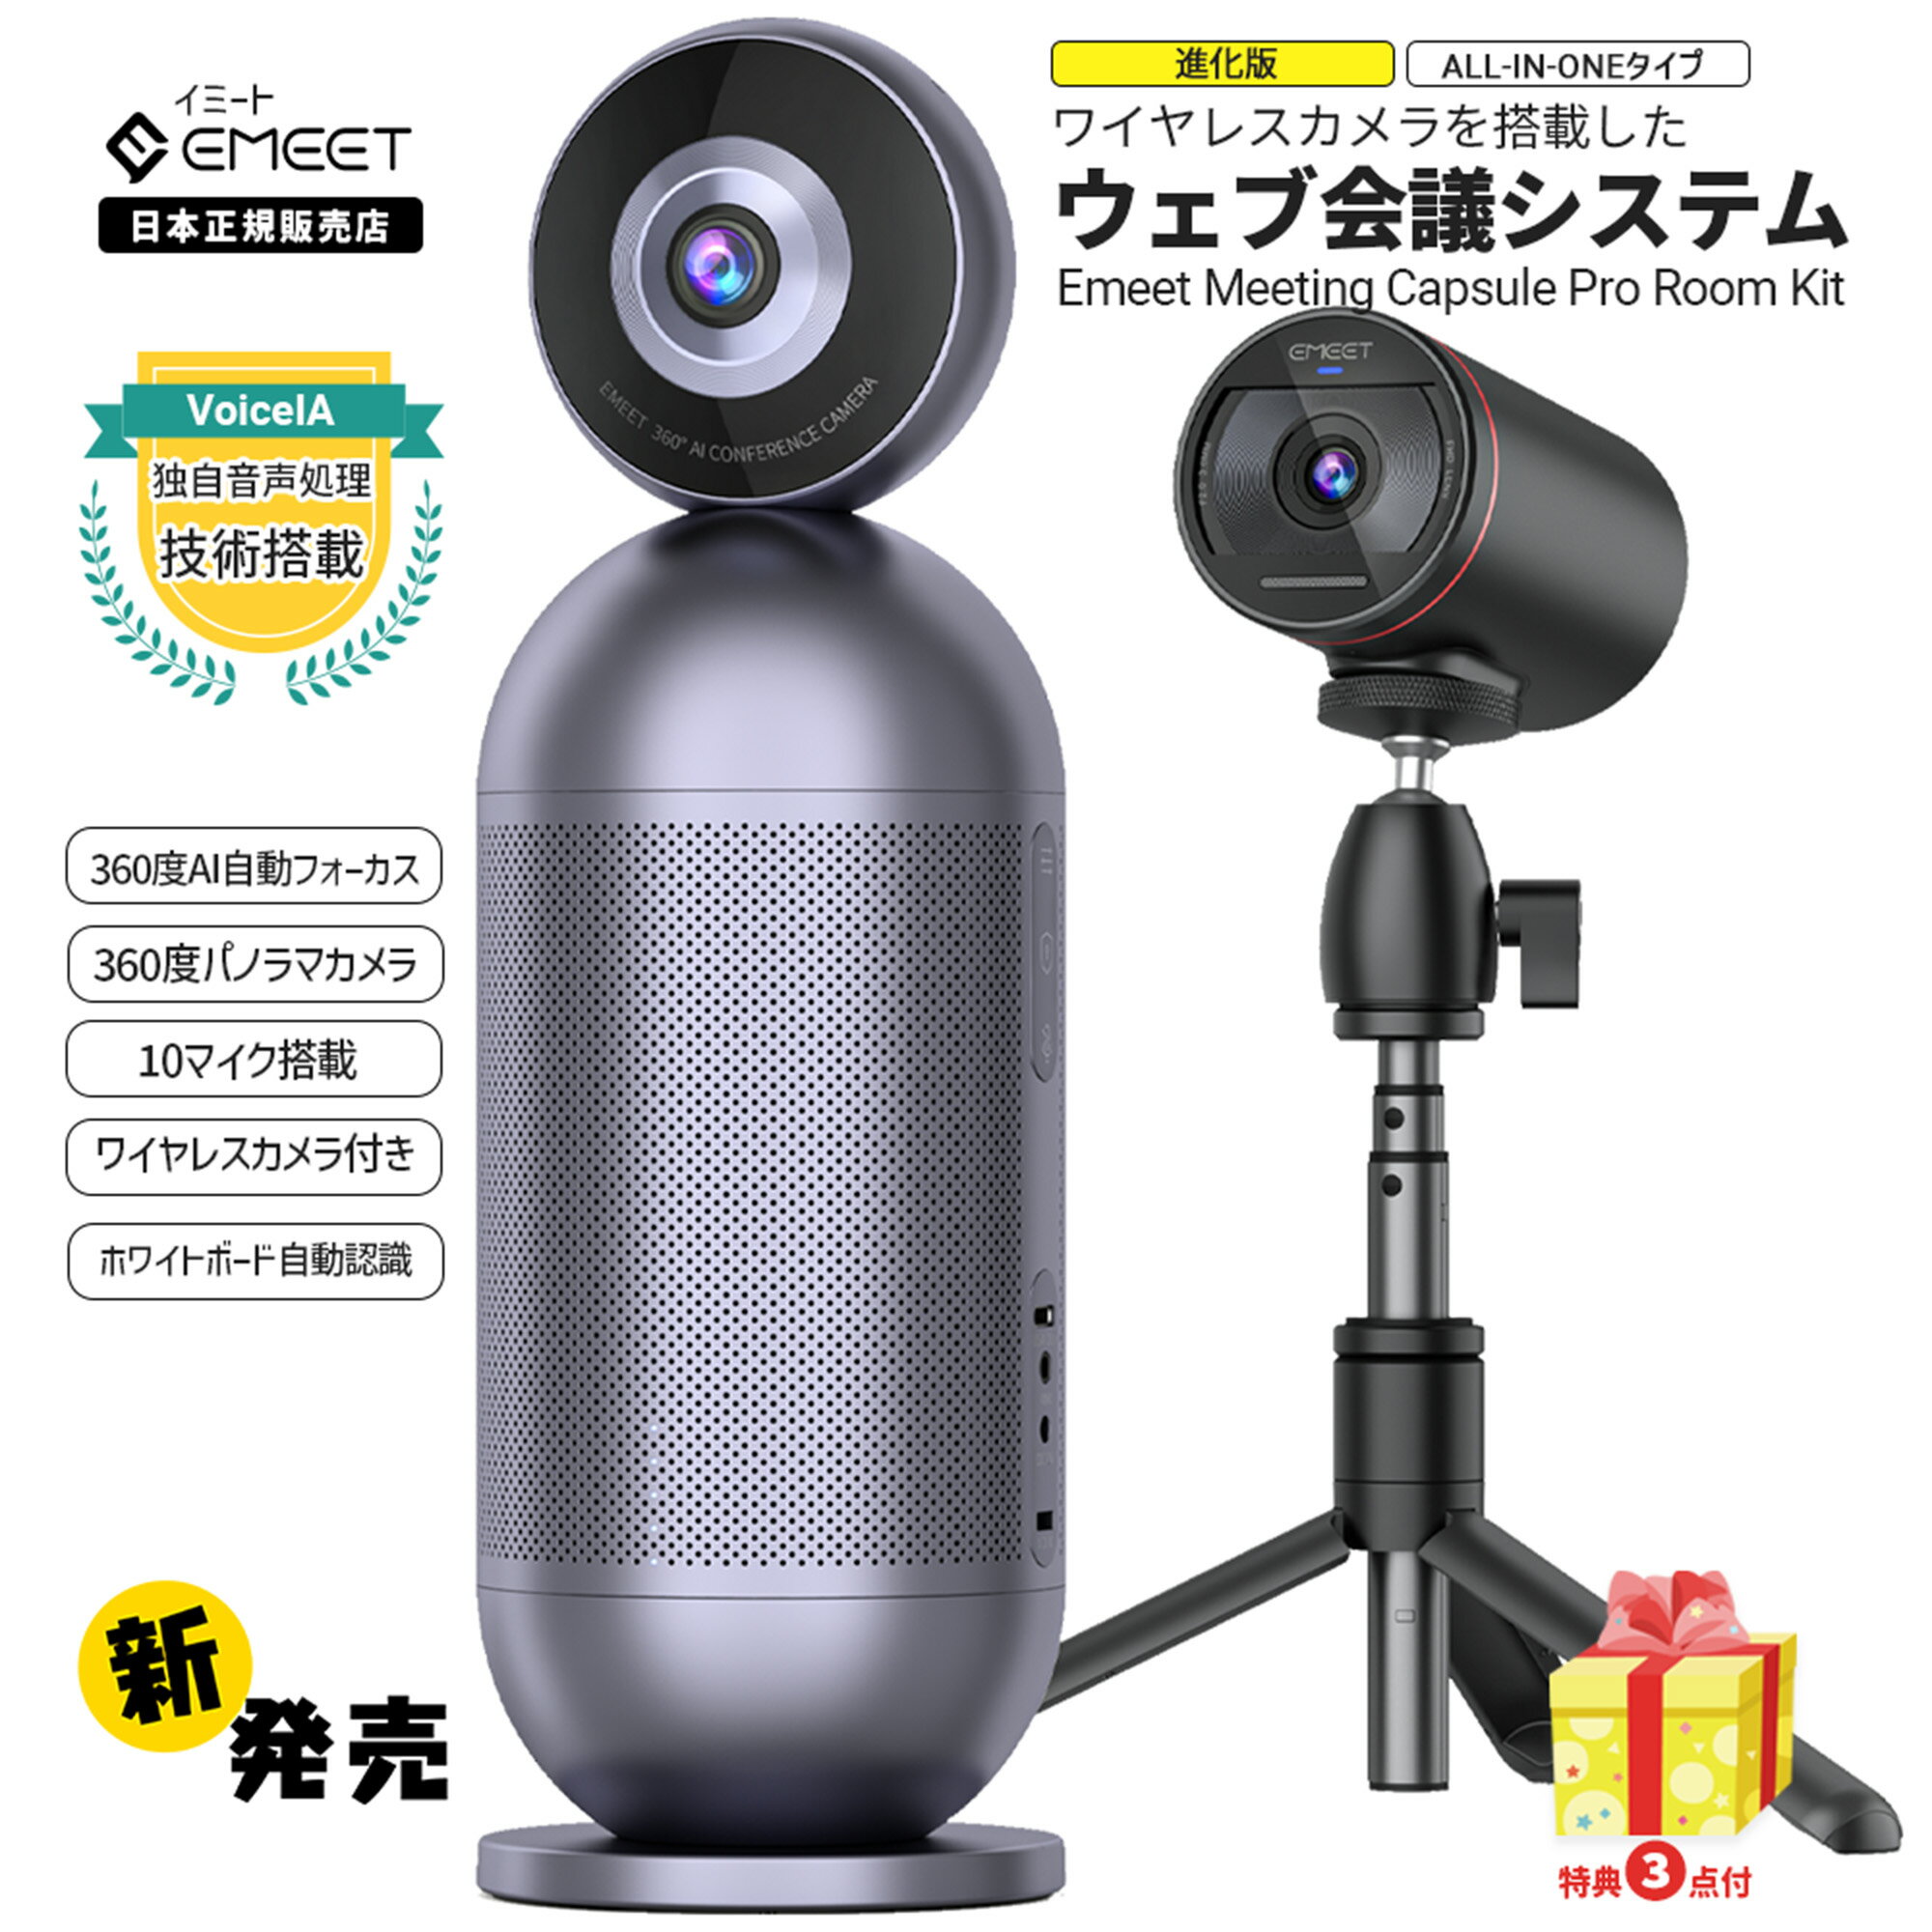 【月末まで25 ポイントで120,545円 特典4点進呈】 EMEET Meeting Capsule Pro Room Kit ( 360度カメラ ワイヤレスカメラ) パノラマ ウェブカメラ AIフォーカス (8 2 10個) マイク搭載スピーカー内蔵 会議室用 Webカメラ イミート